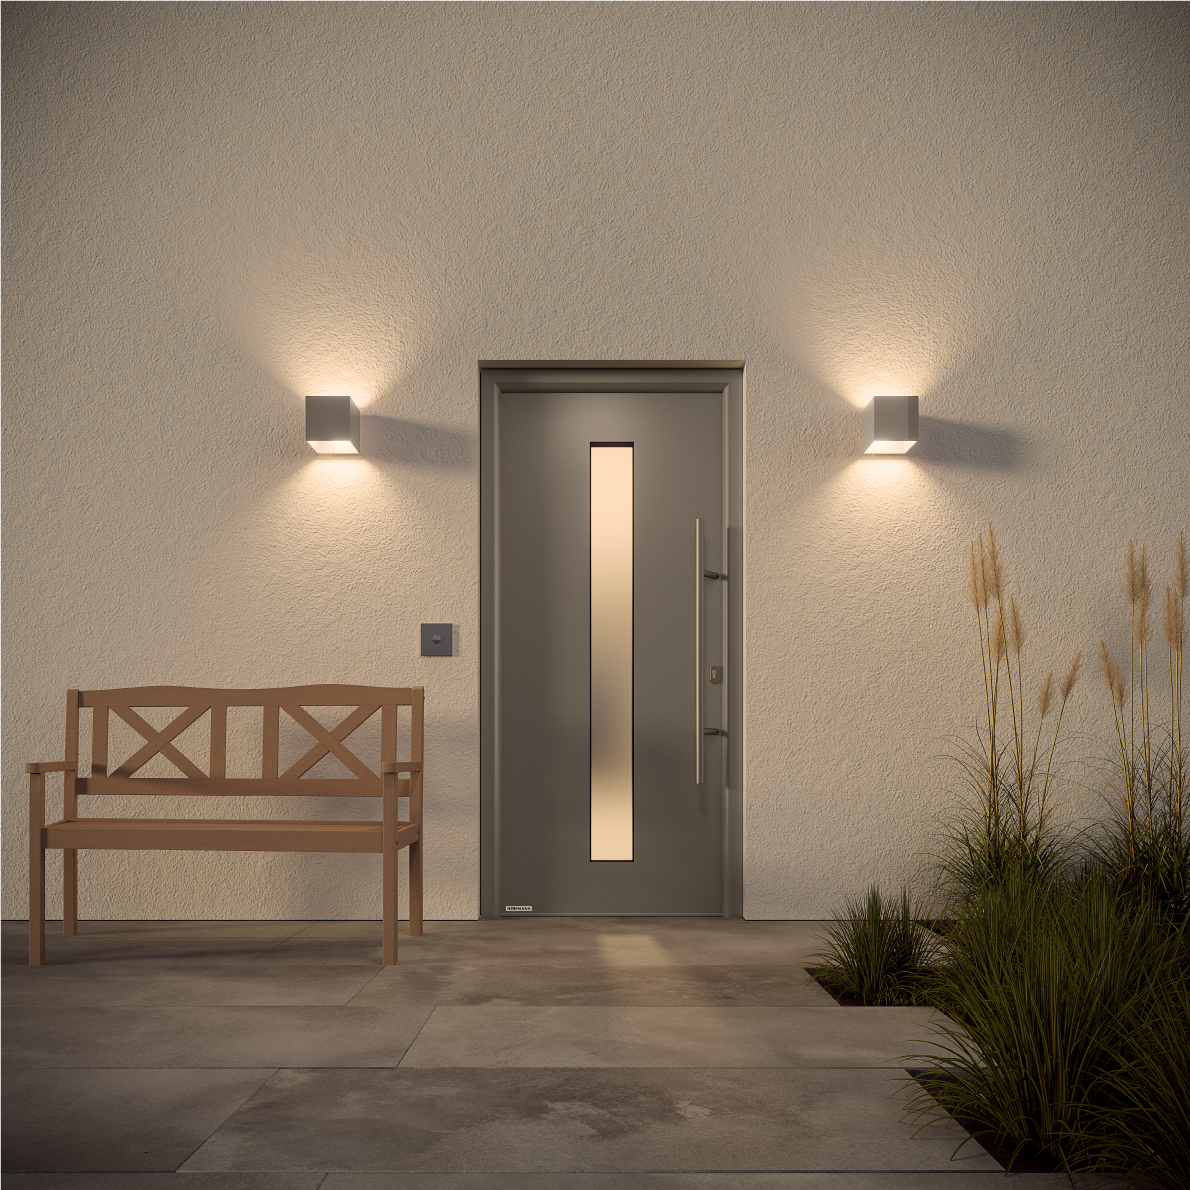 Conseil Tubauto : Comment illuminer l'entrée de votre maison? - Tubauto